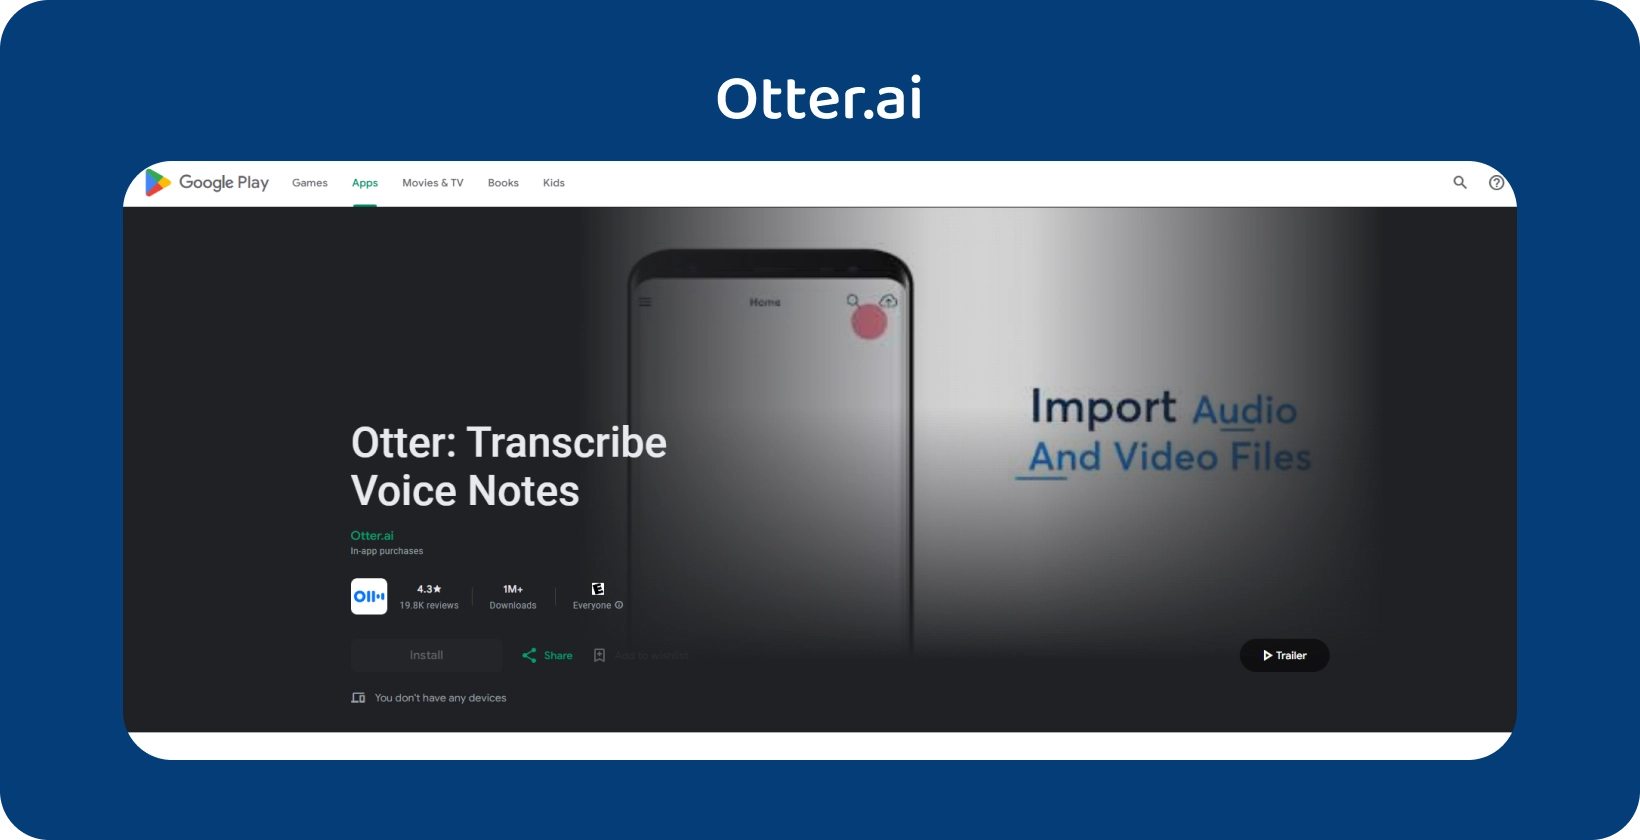 Otter.ai aplikasi pada Google Play, menampilkan transkripsi nota suara dan keupayaan import fail audio/video.